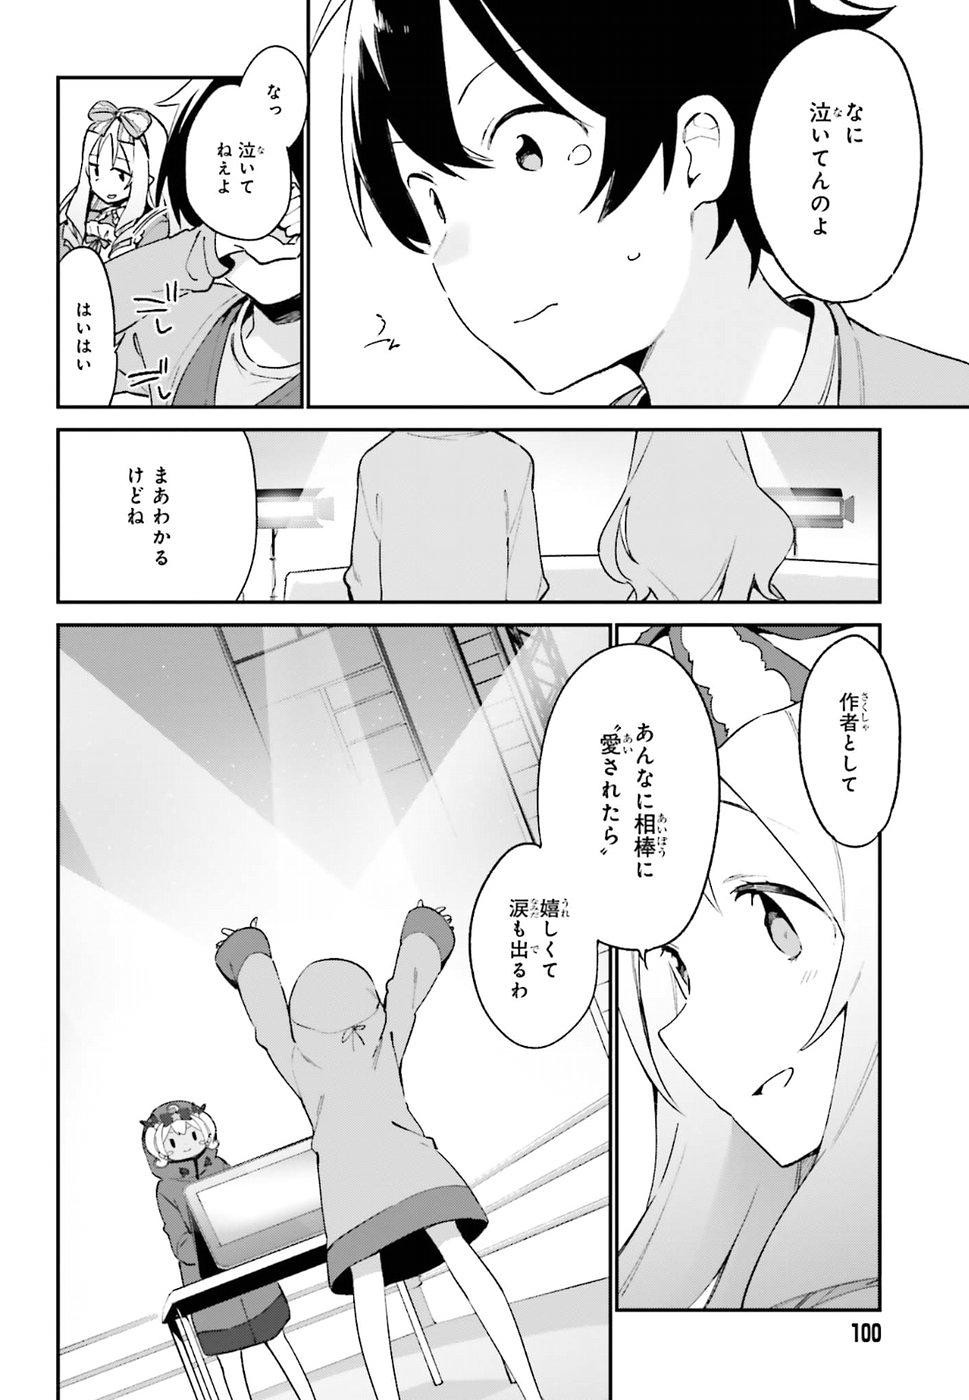 Ero Manga Sensei - Chapter 45 - Page 20